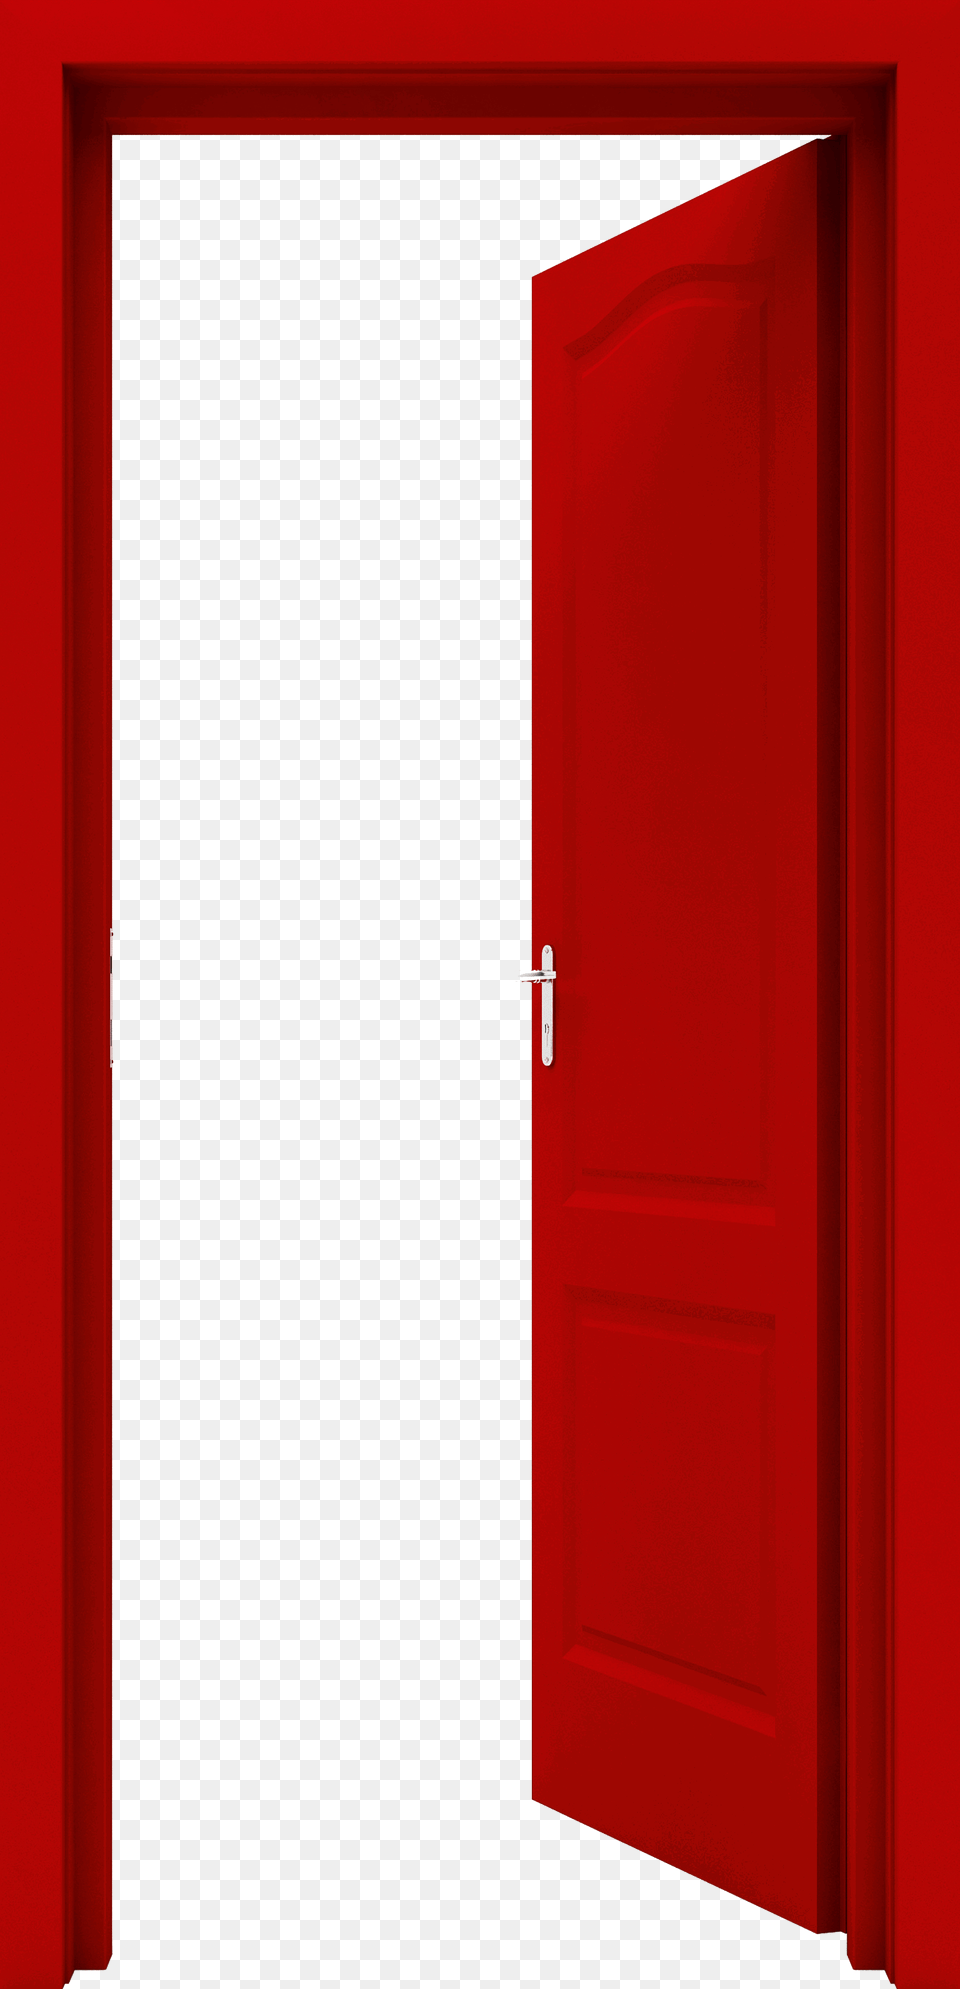 Red Door Image Free Png